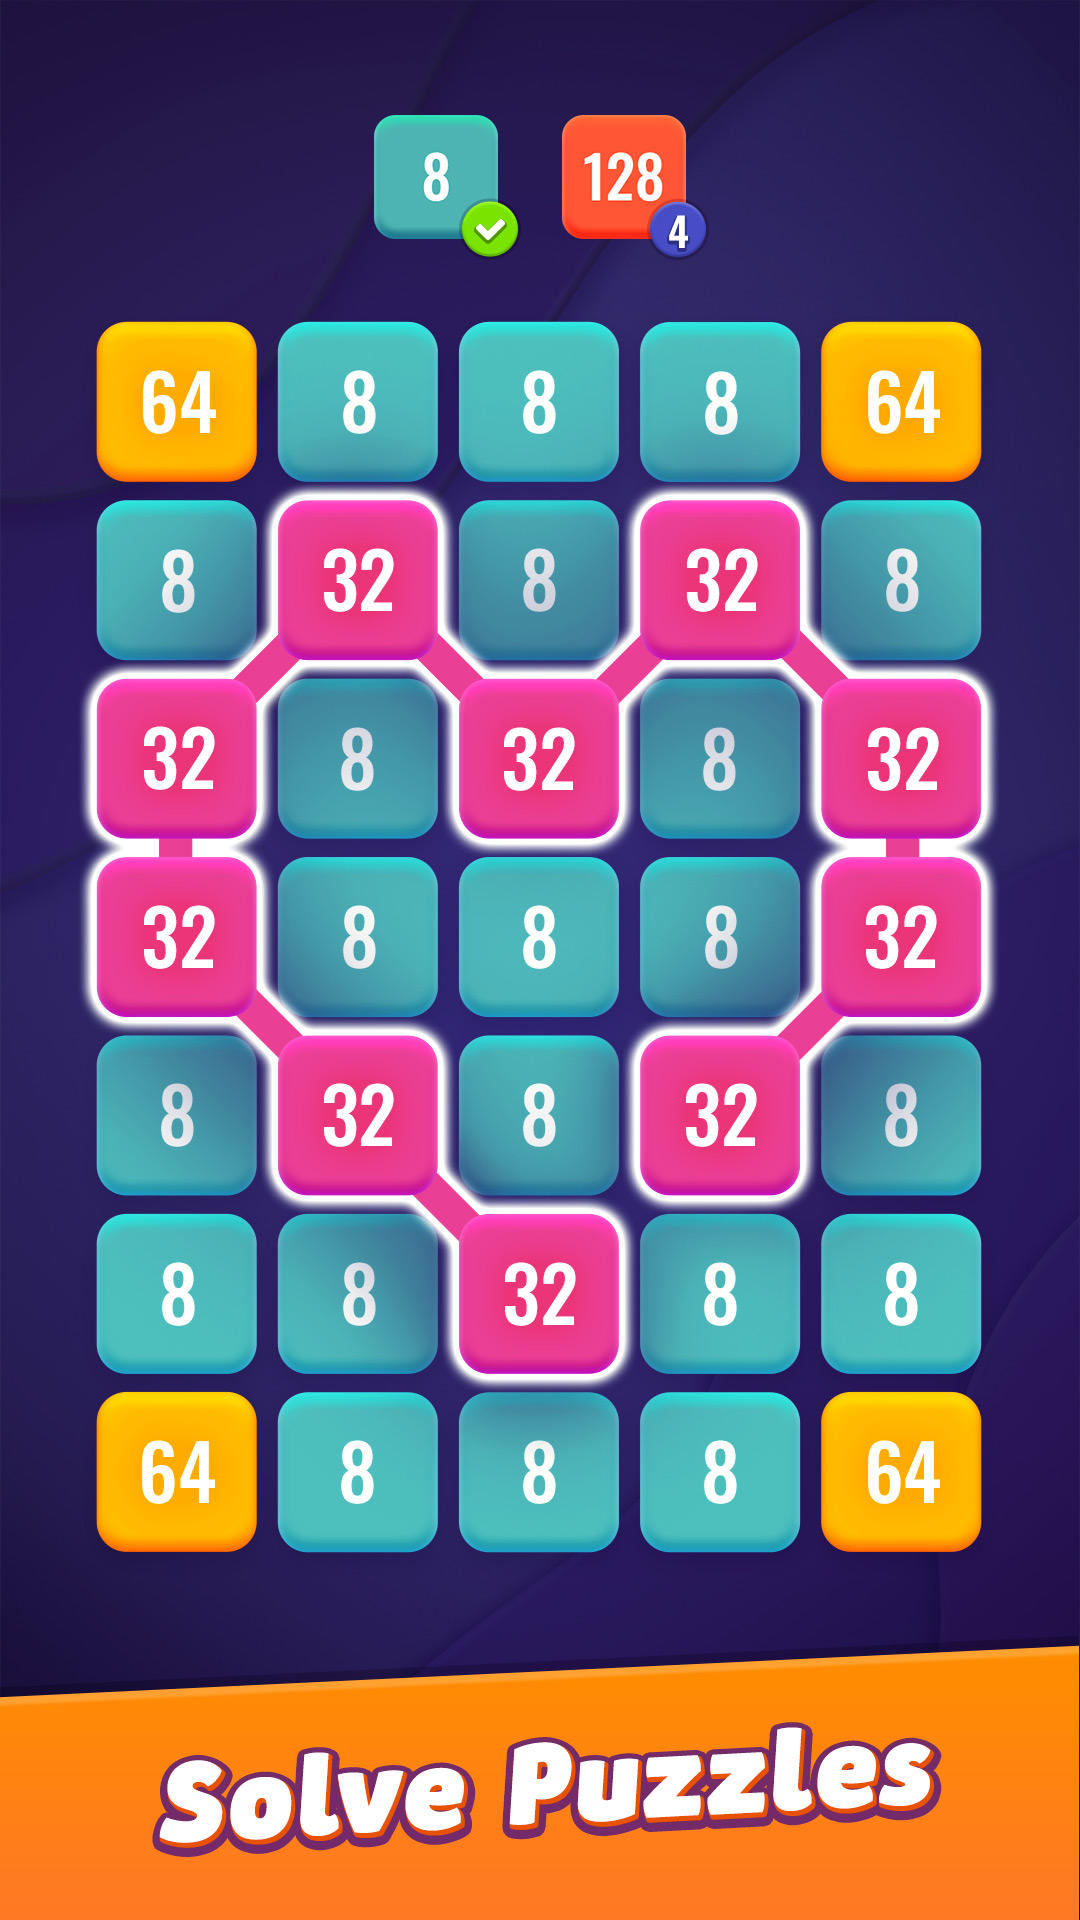 2448: Block Puzzle Number Gameのキャプチャ